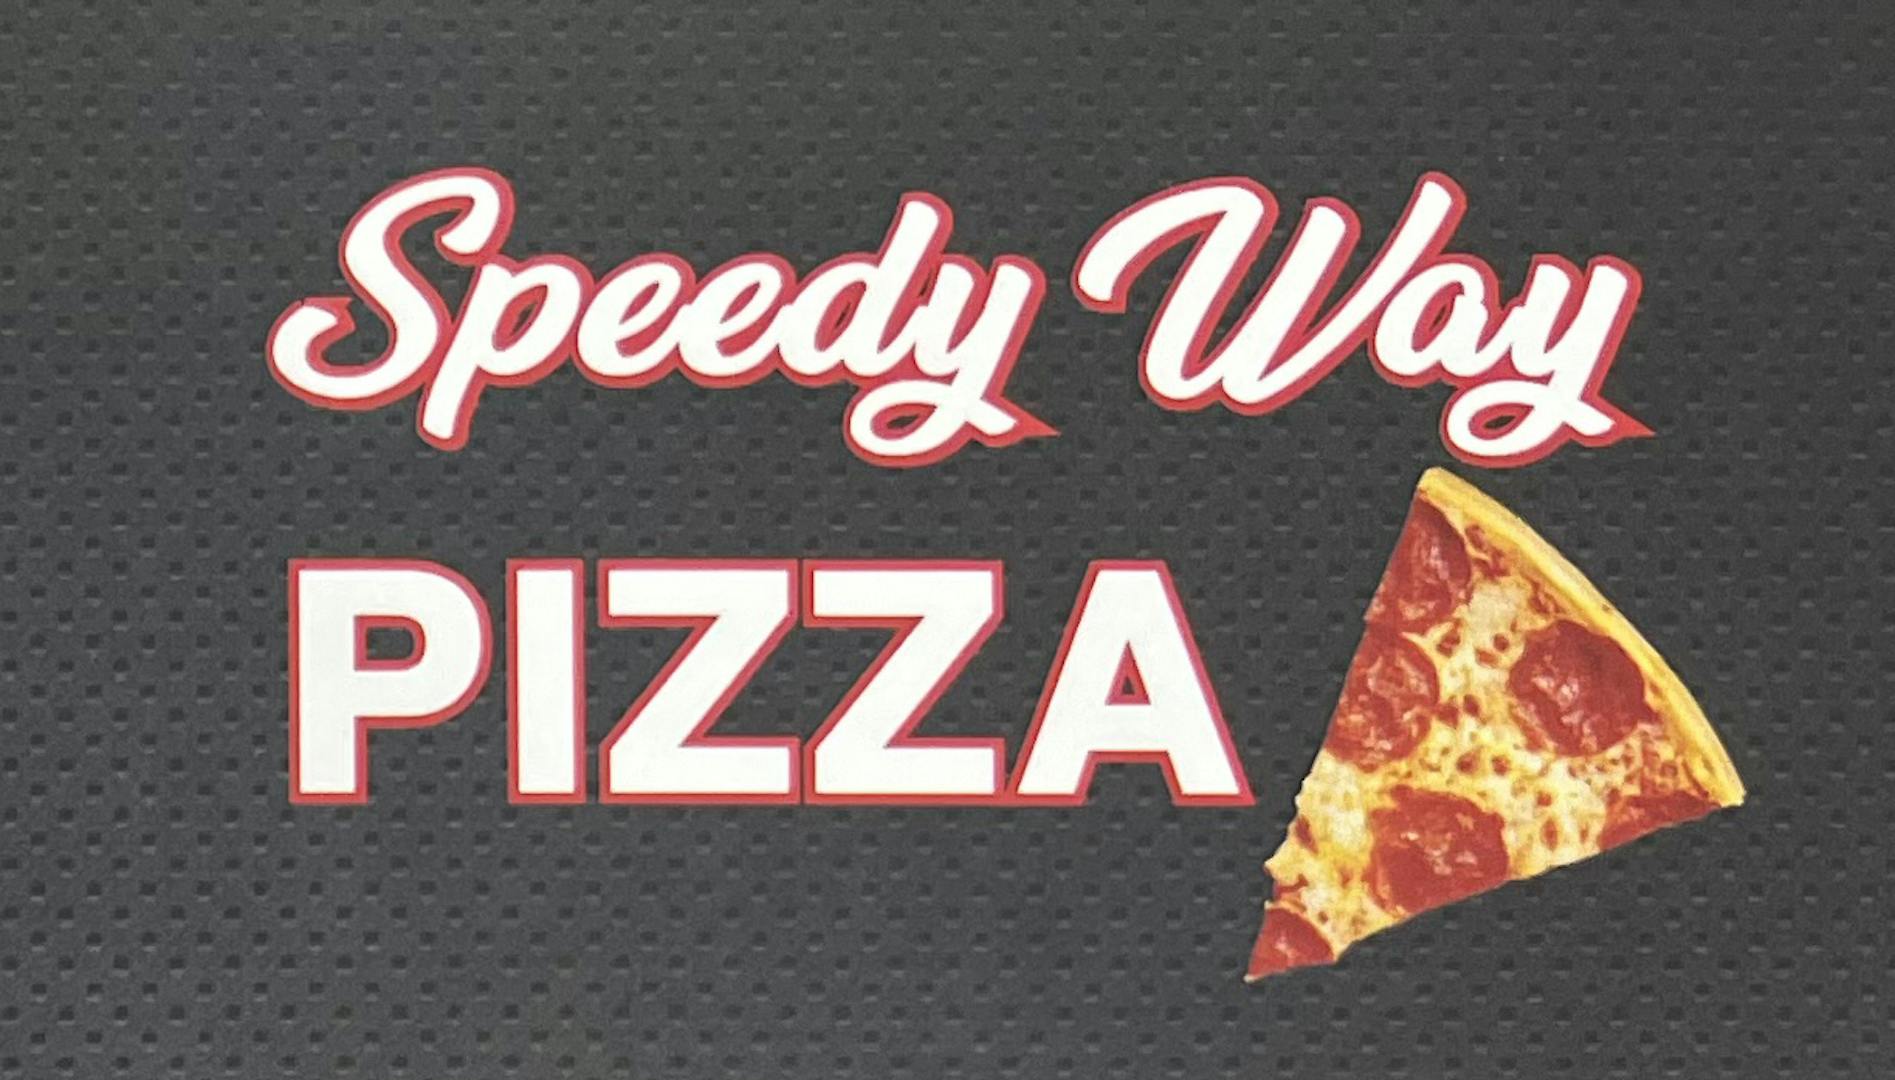 Speedy Way Pizza